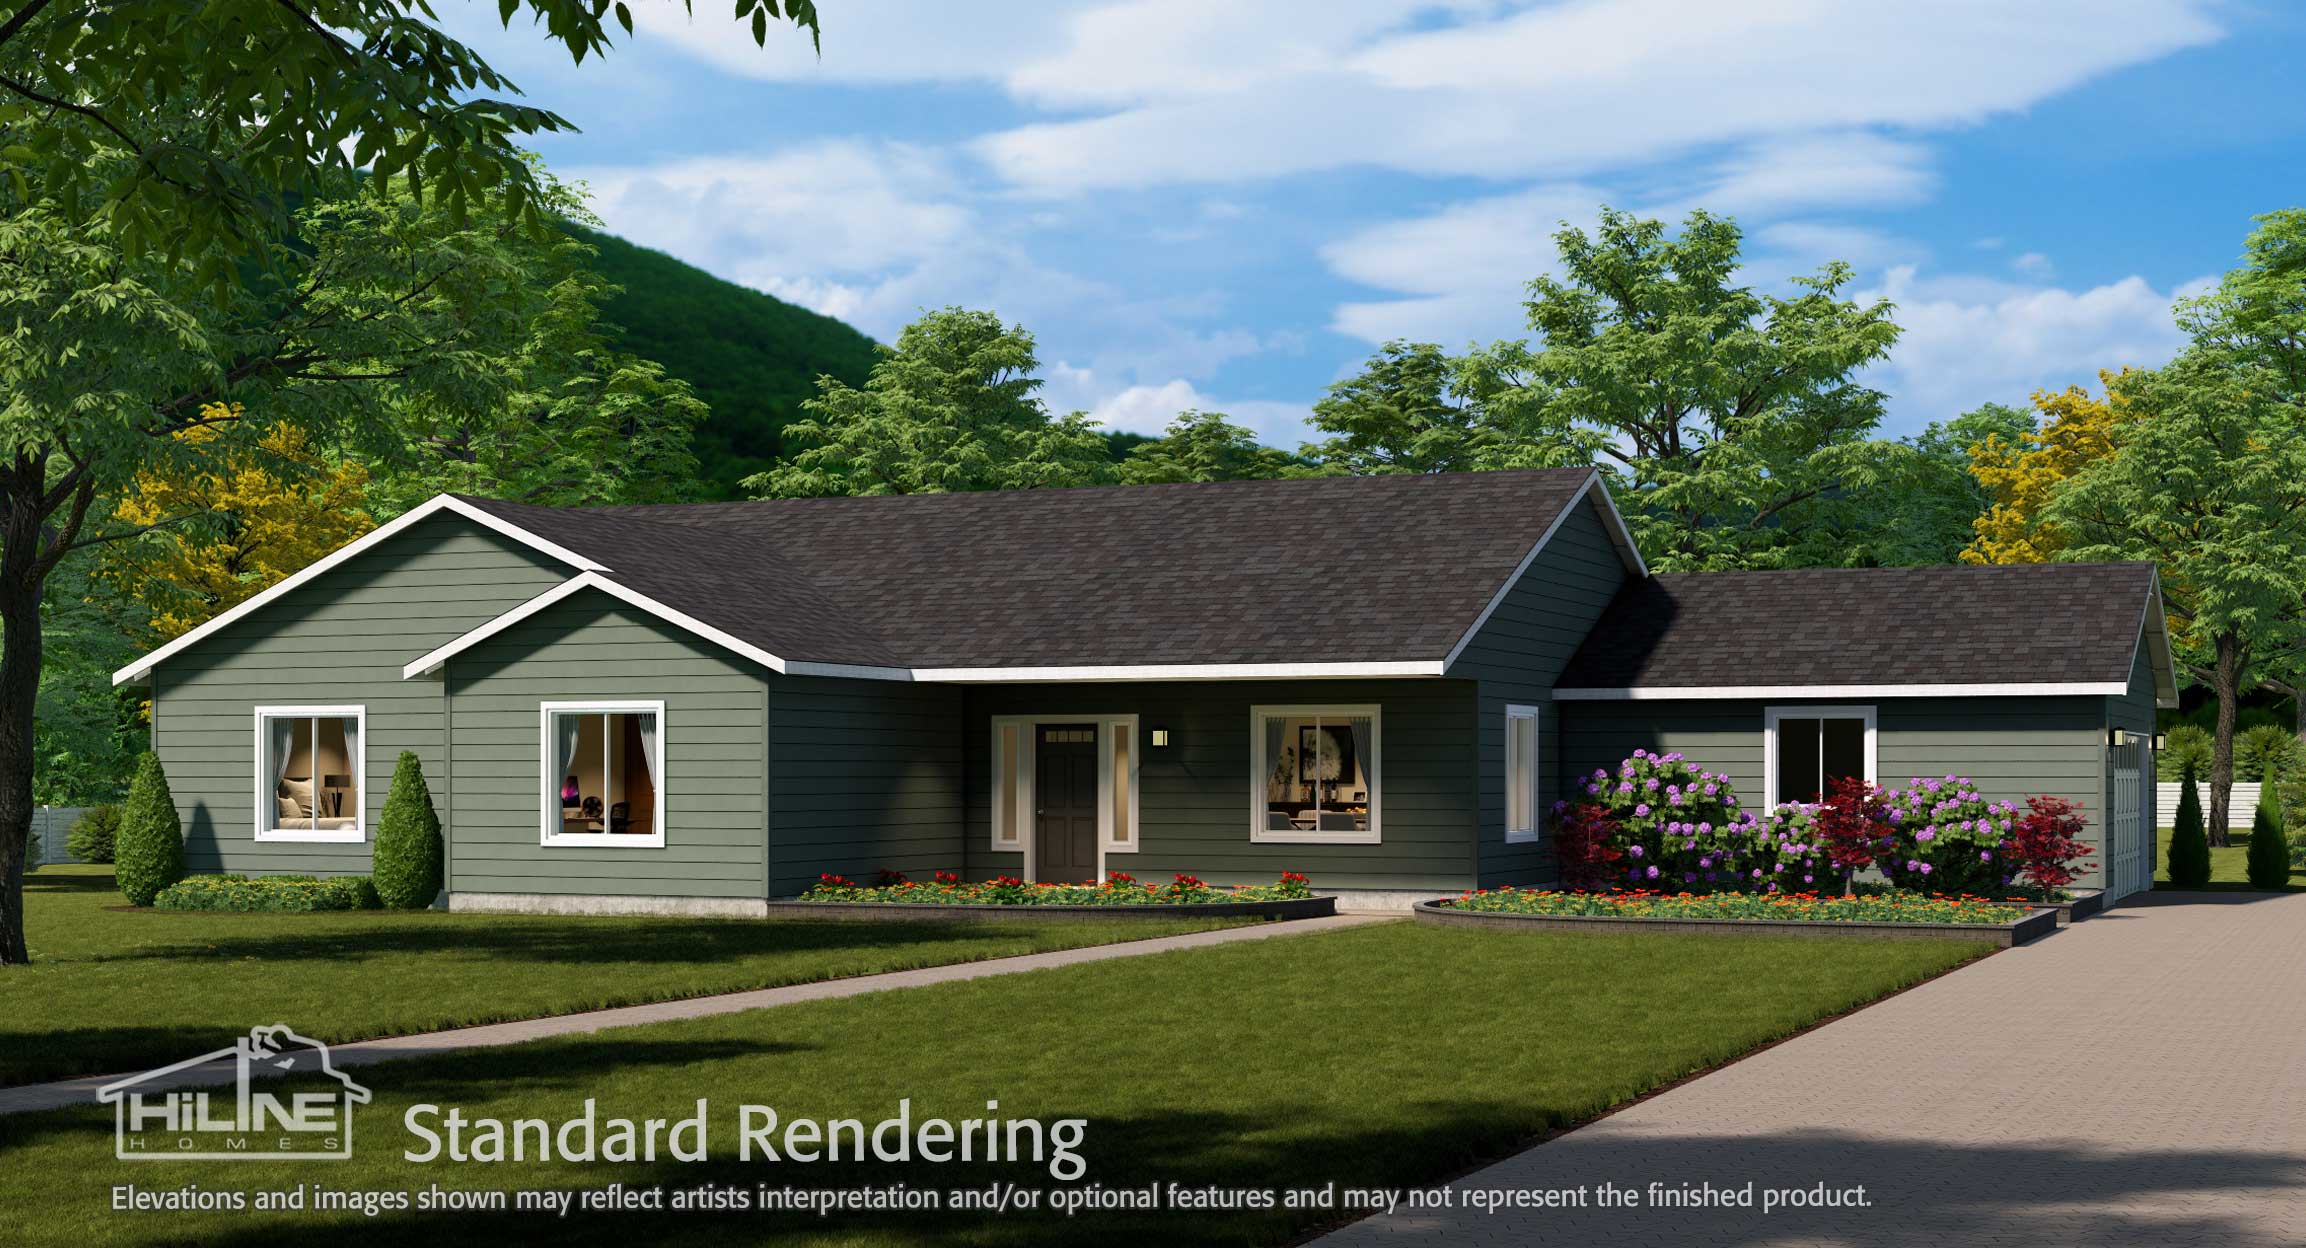 Image of Home Plan 2320 Standard Rendering.